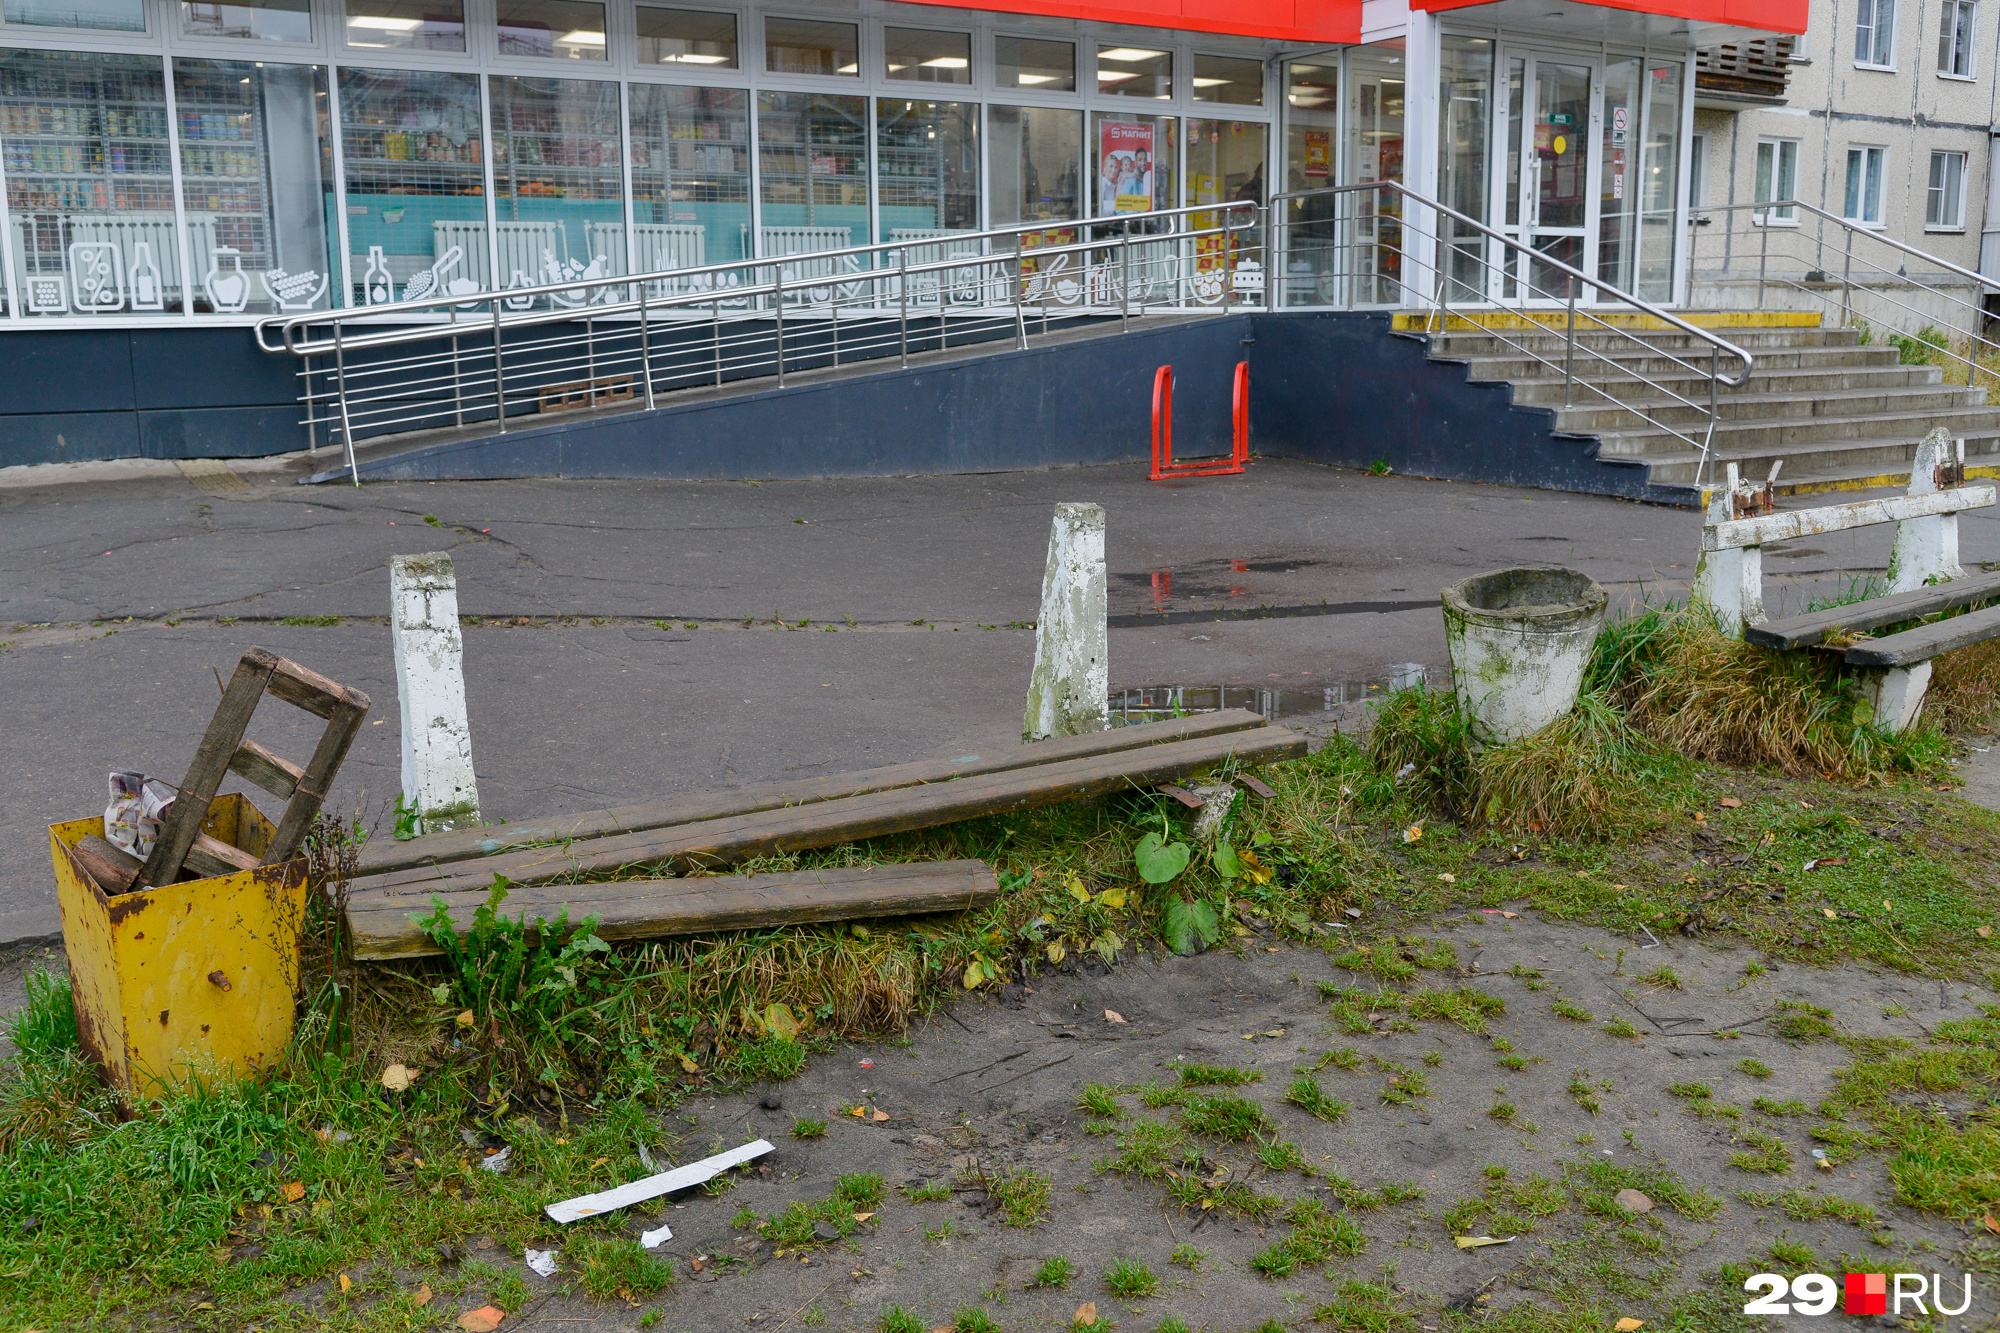 Остов сгнившей и сломанной скамейки — как памятник комфортной городской среде